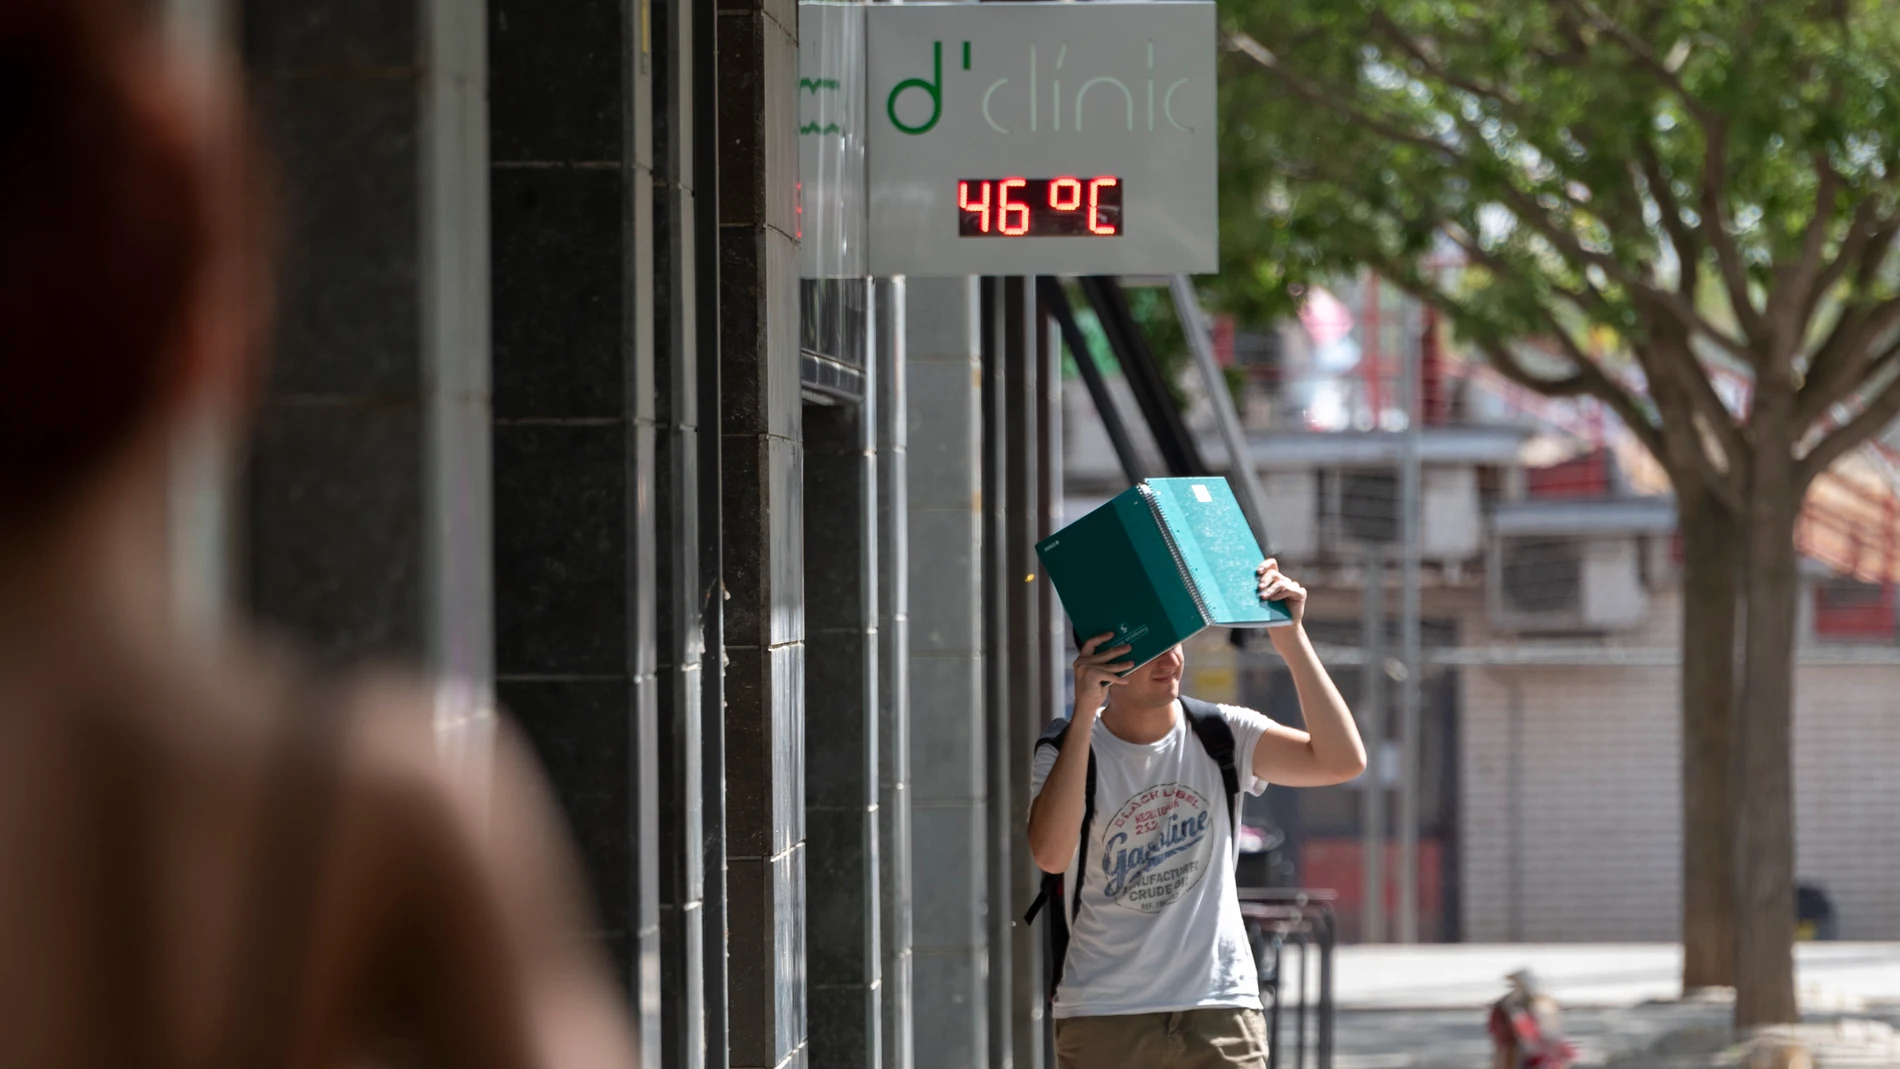 Un joven camina por una calle de Lleida, bajo un termómetro que indica los 47ºC este miércoles.